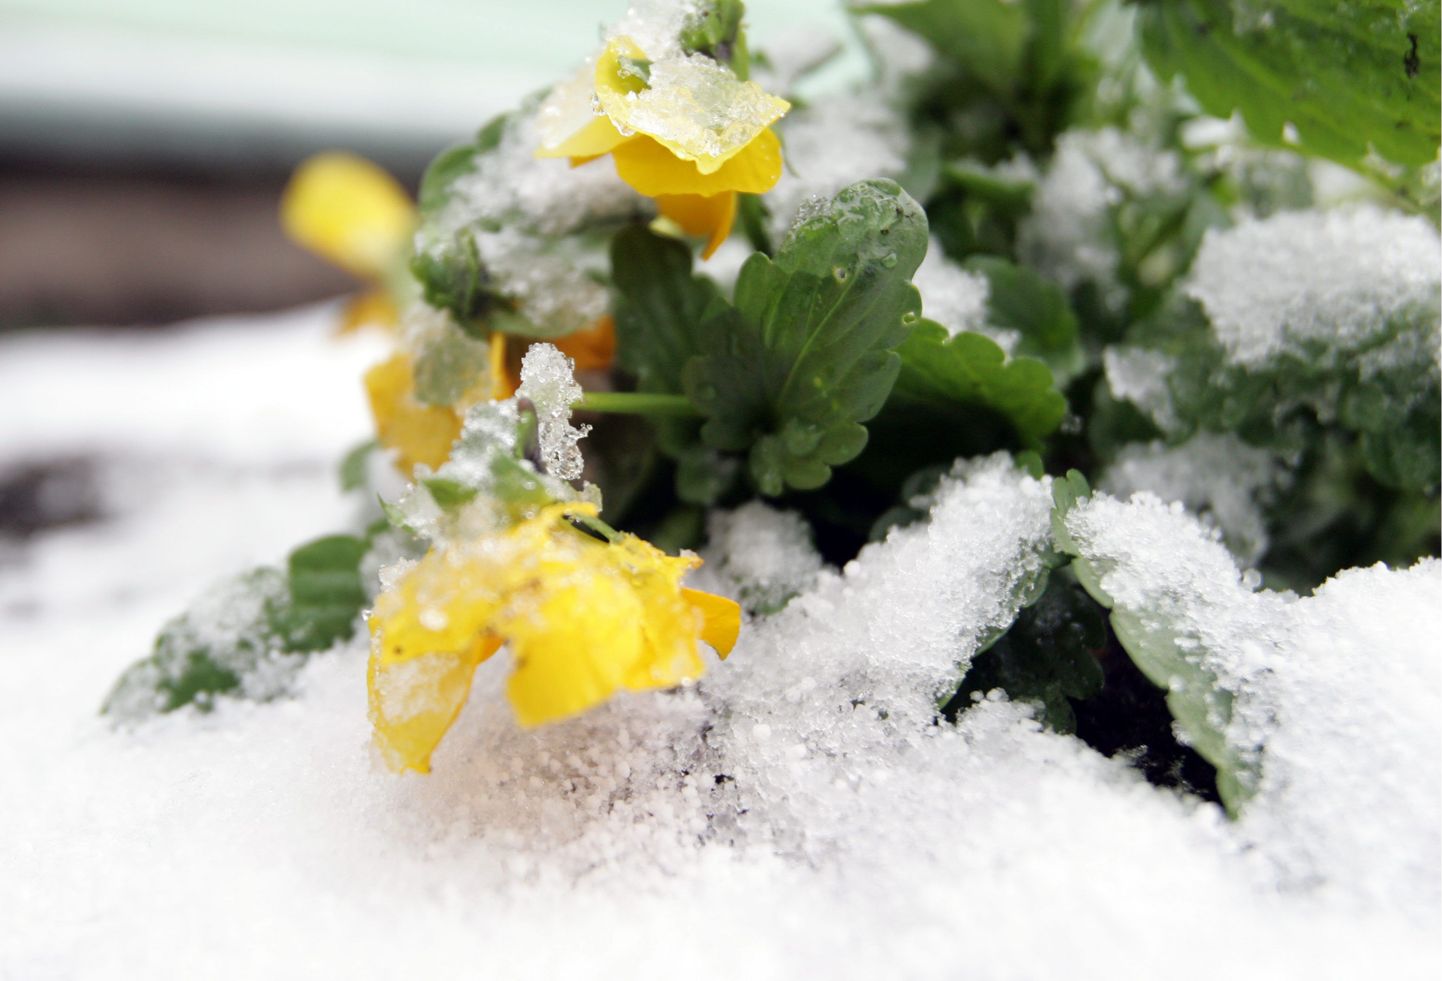 Sooja sügise tõttu tuli esimene lumi maha paljude aiapidajate jaoks ootamatult. Lume alla jäid nii lilled kui ka juurikad.